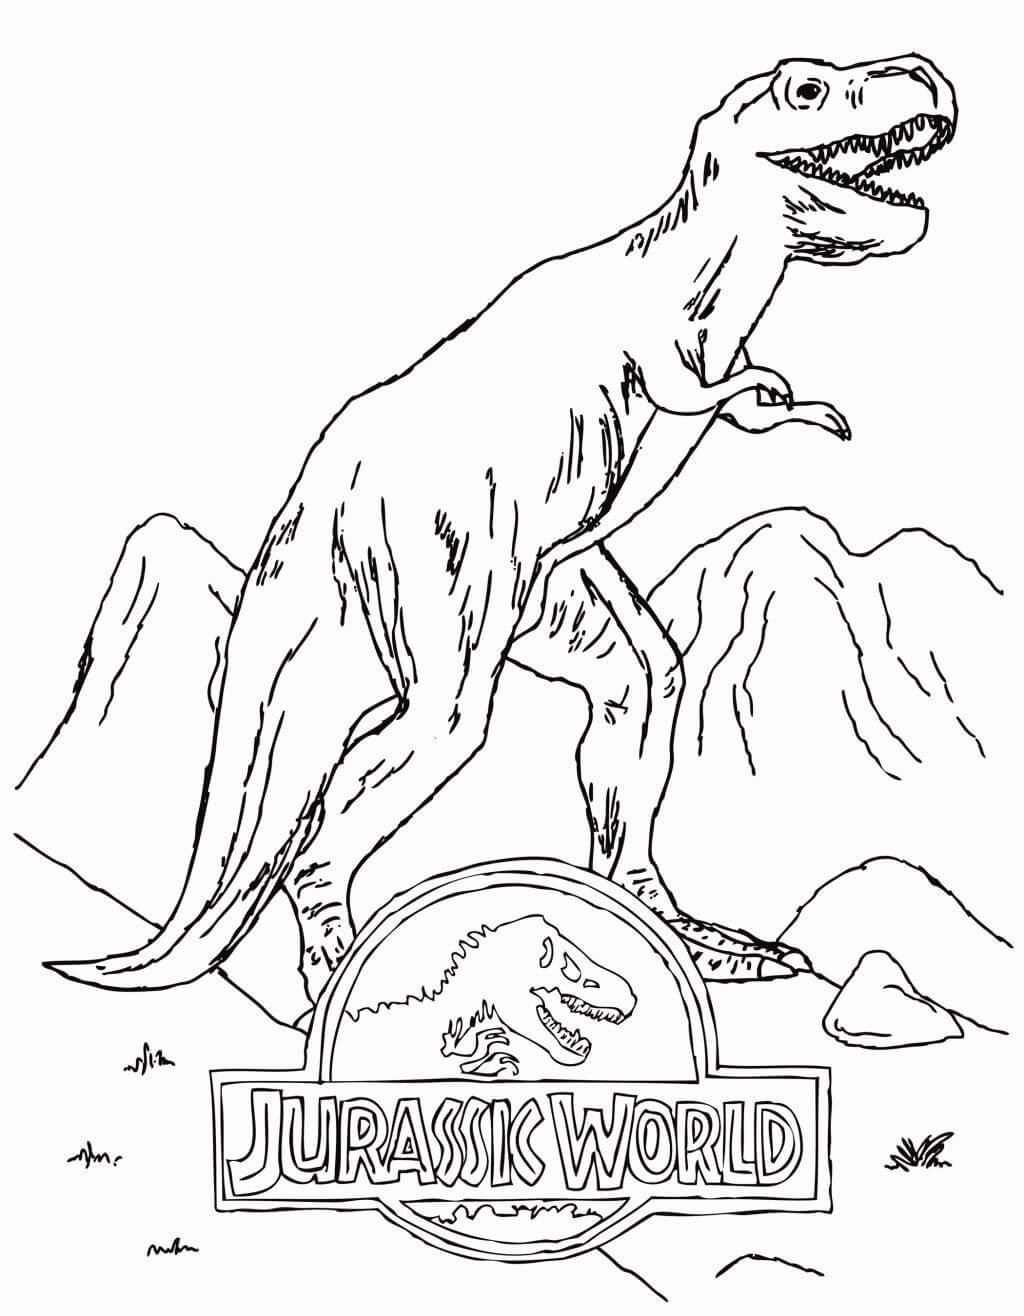 Logo Mundo Jurásico con T Rex